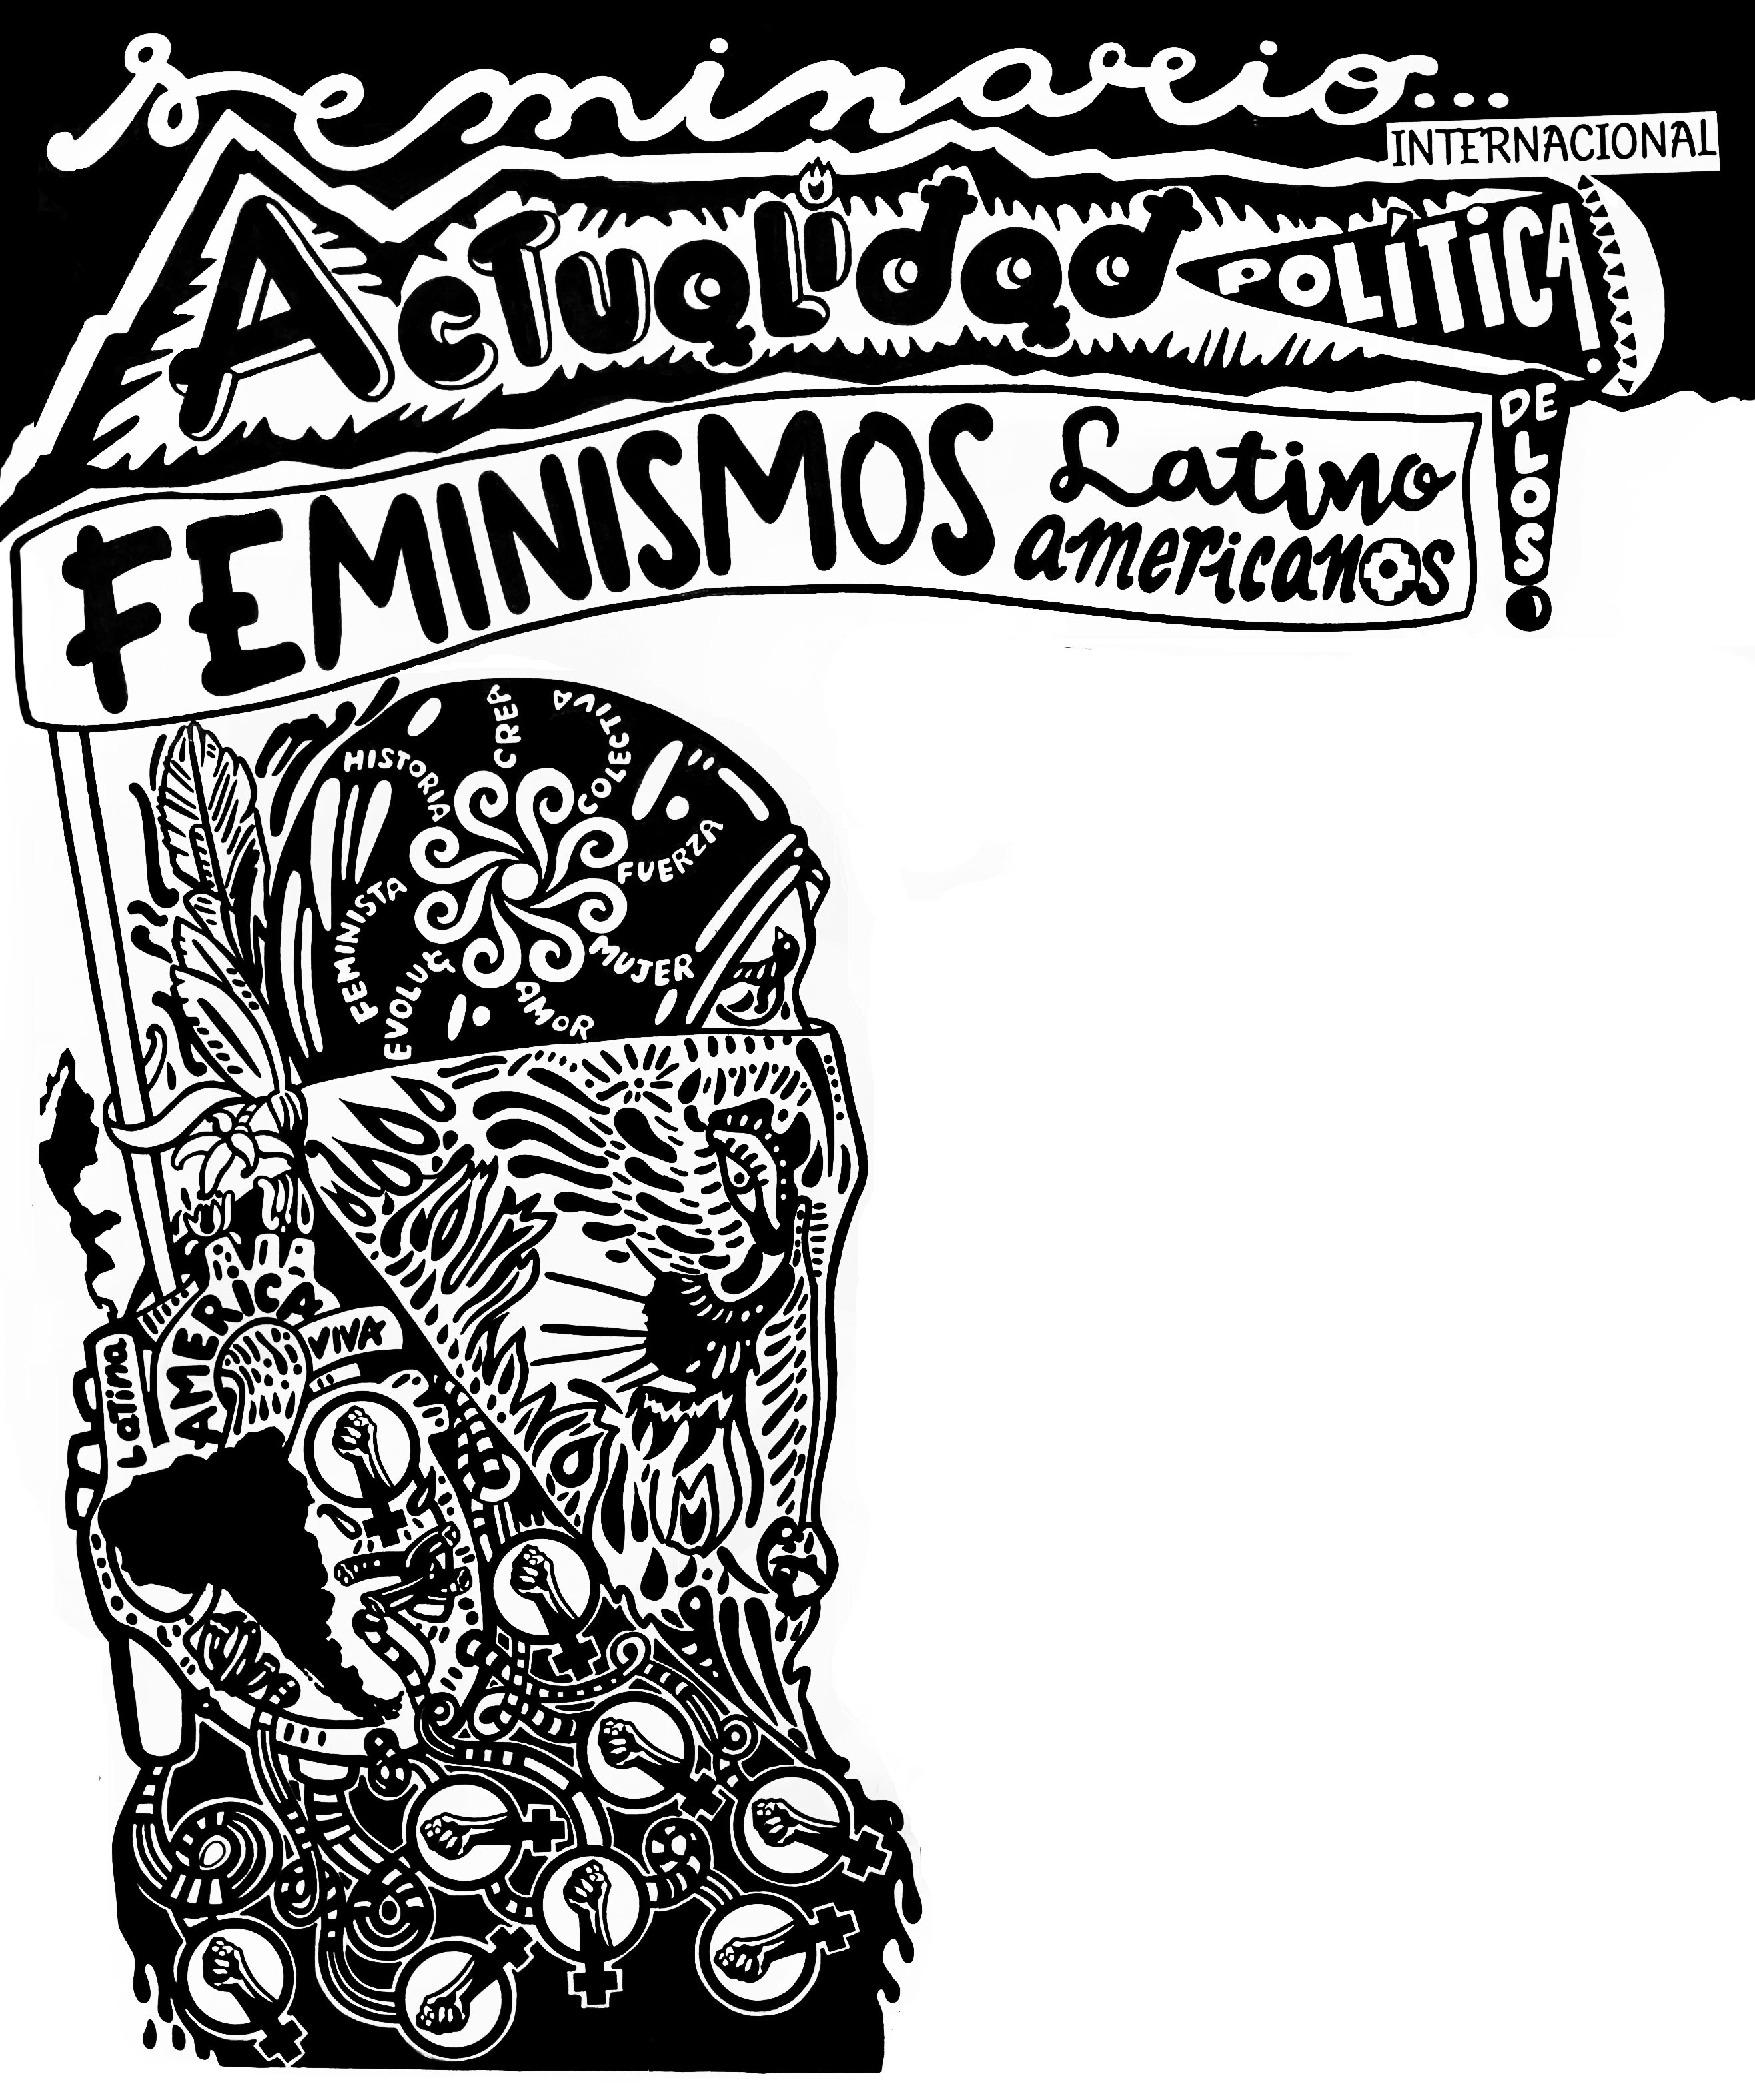 											Ver Núm. 11 (2019): Seminario Internacional Actualidad Política de los Feminismos Latinoamericanos
										